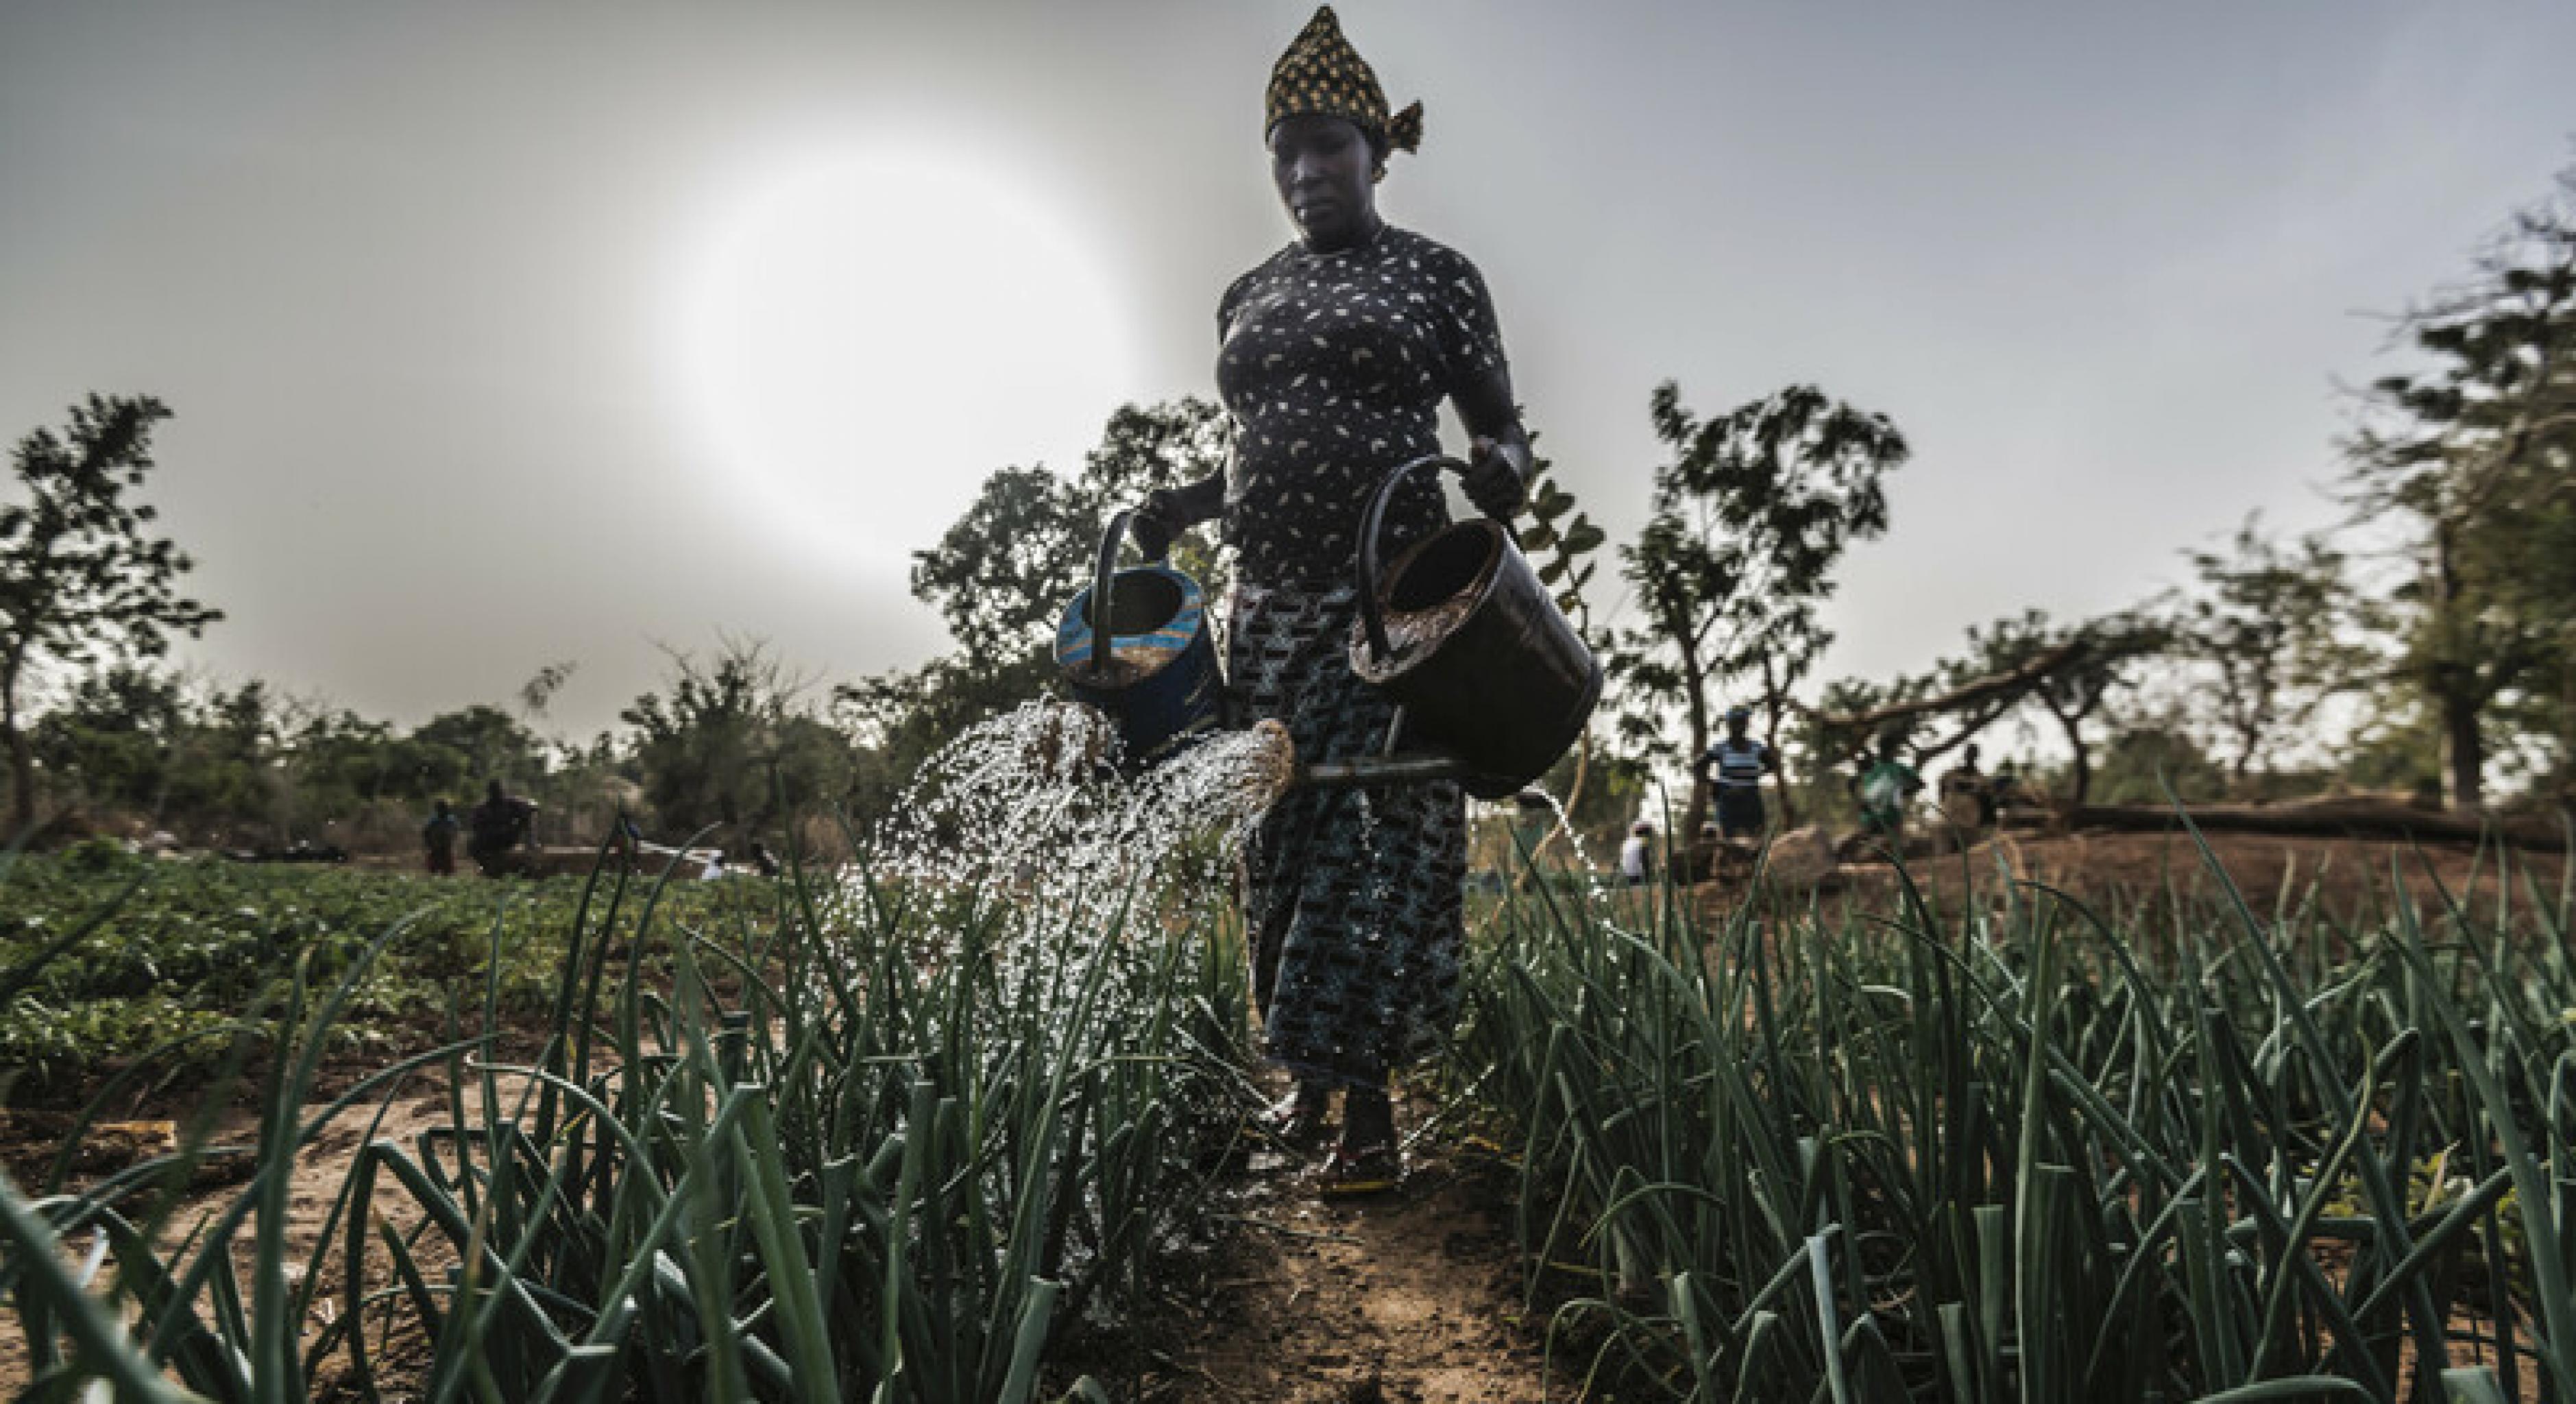 Aguiratou Ouedraogo in Burkina Faso wässert ihr Feld mit Gießkannen.